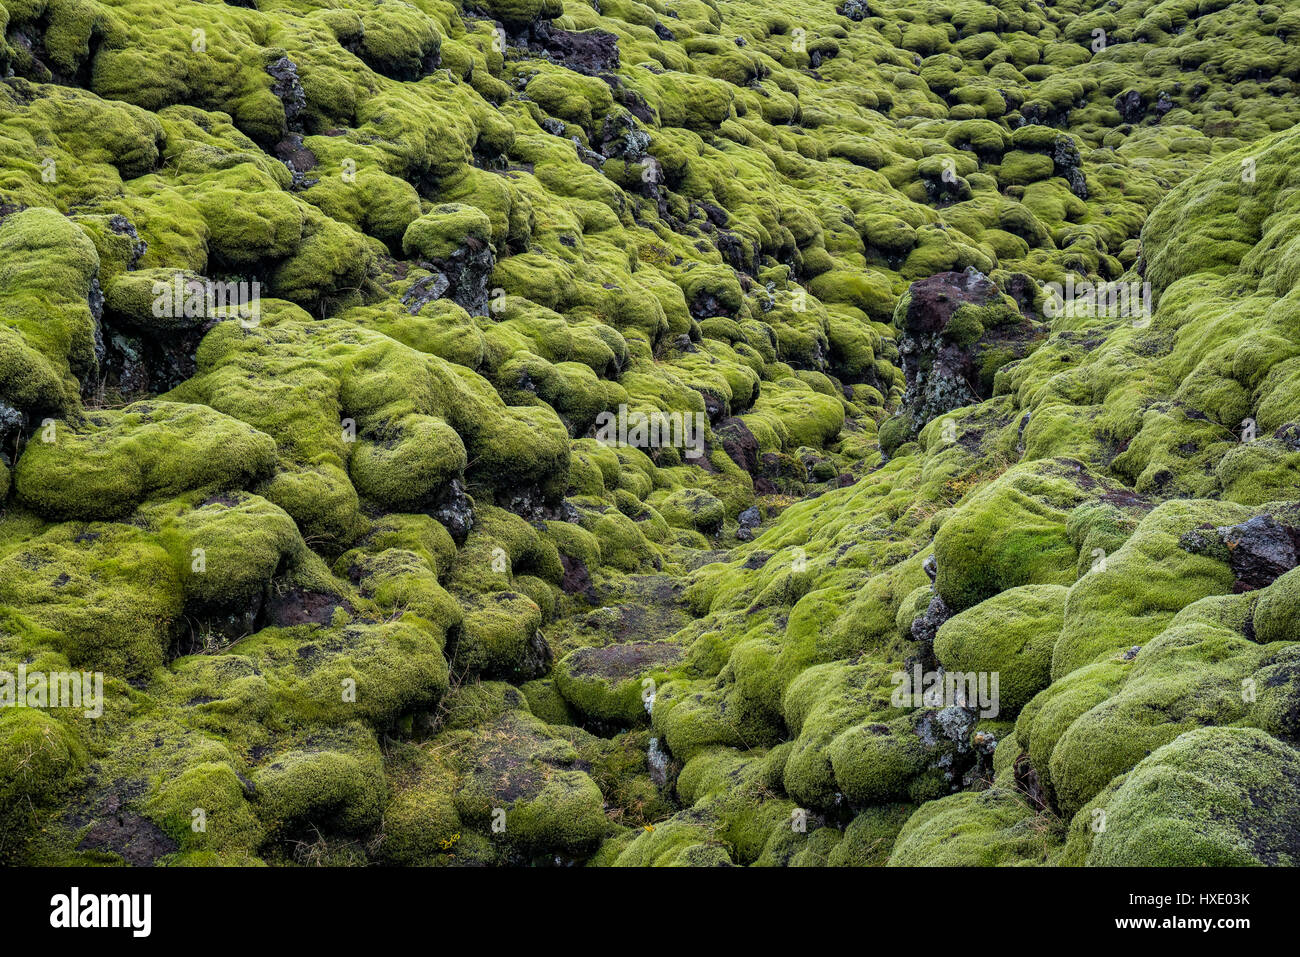 Moss ist die erste organische Substanz auf die Lavafelder Islands zu wachsen. Stockfoto